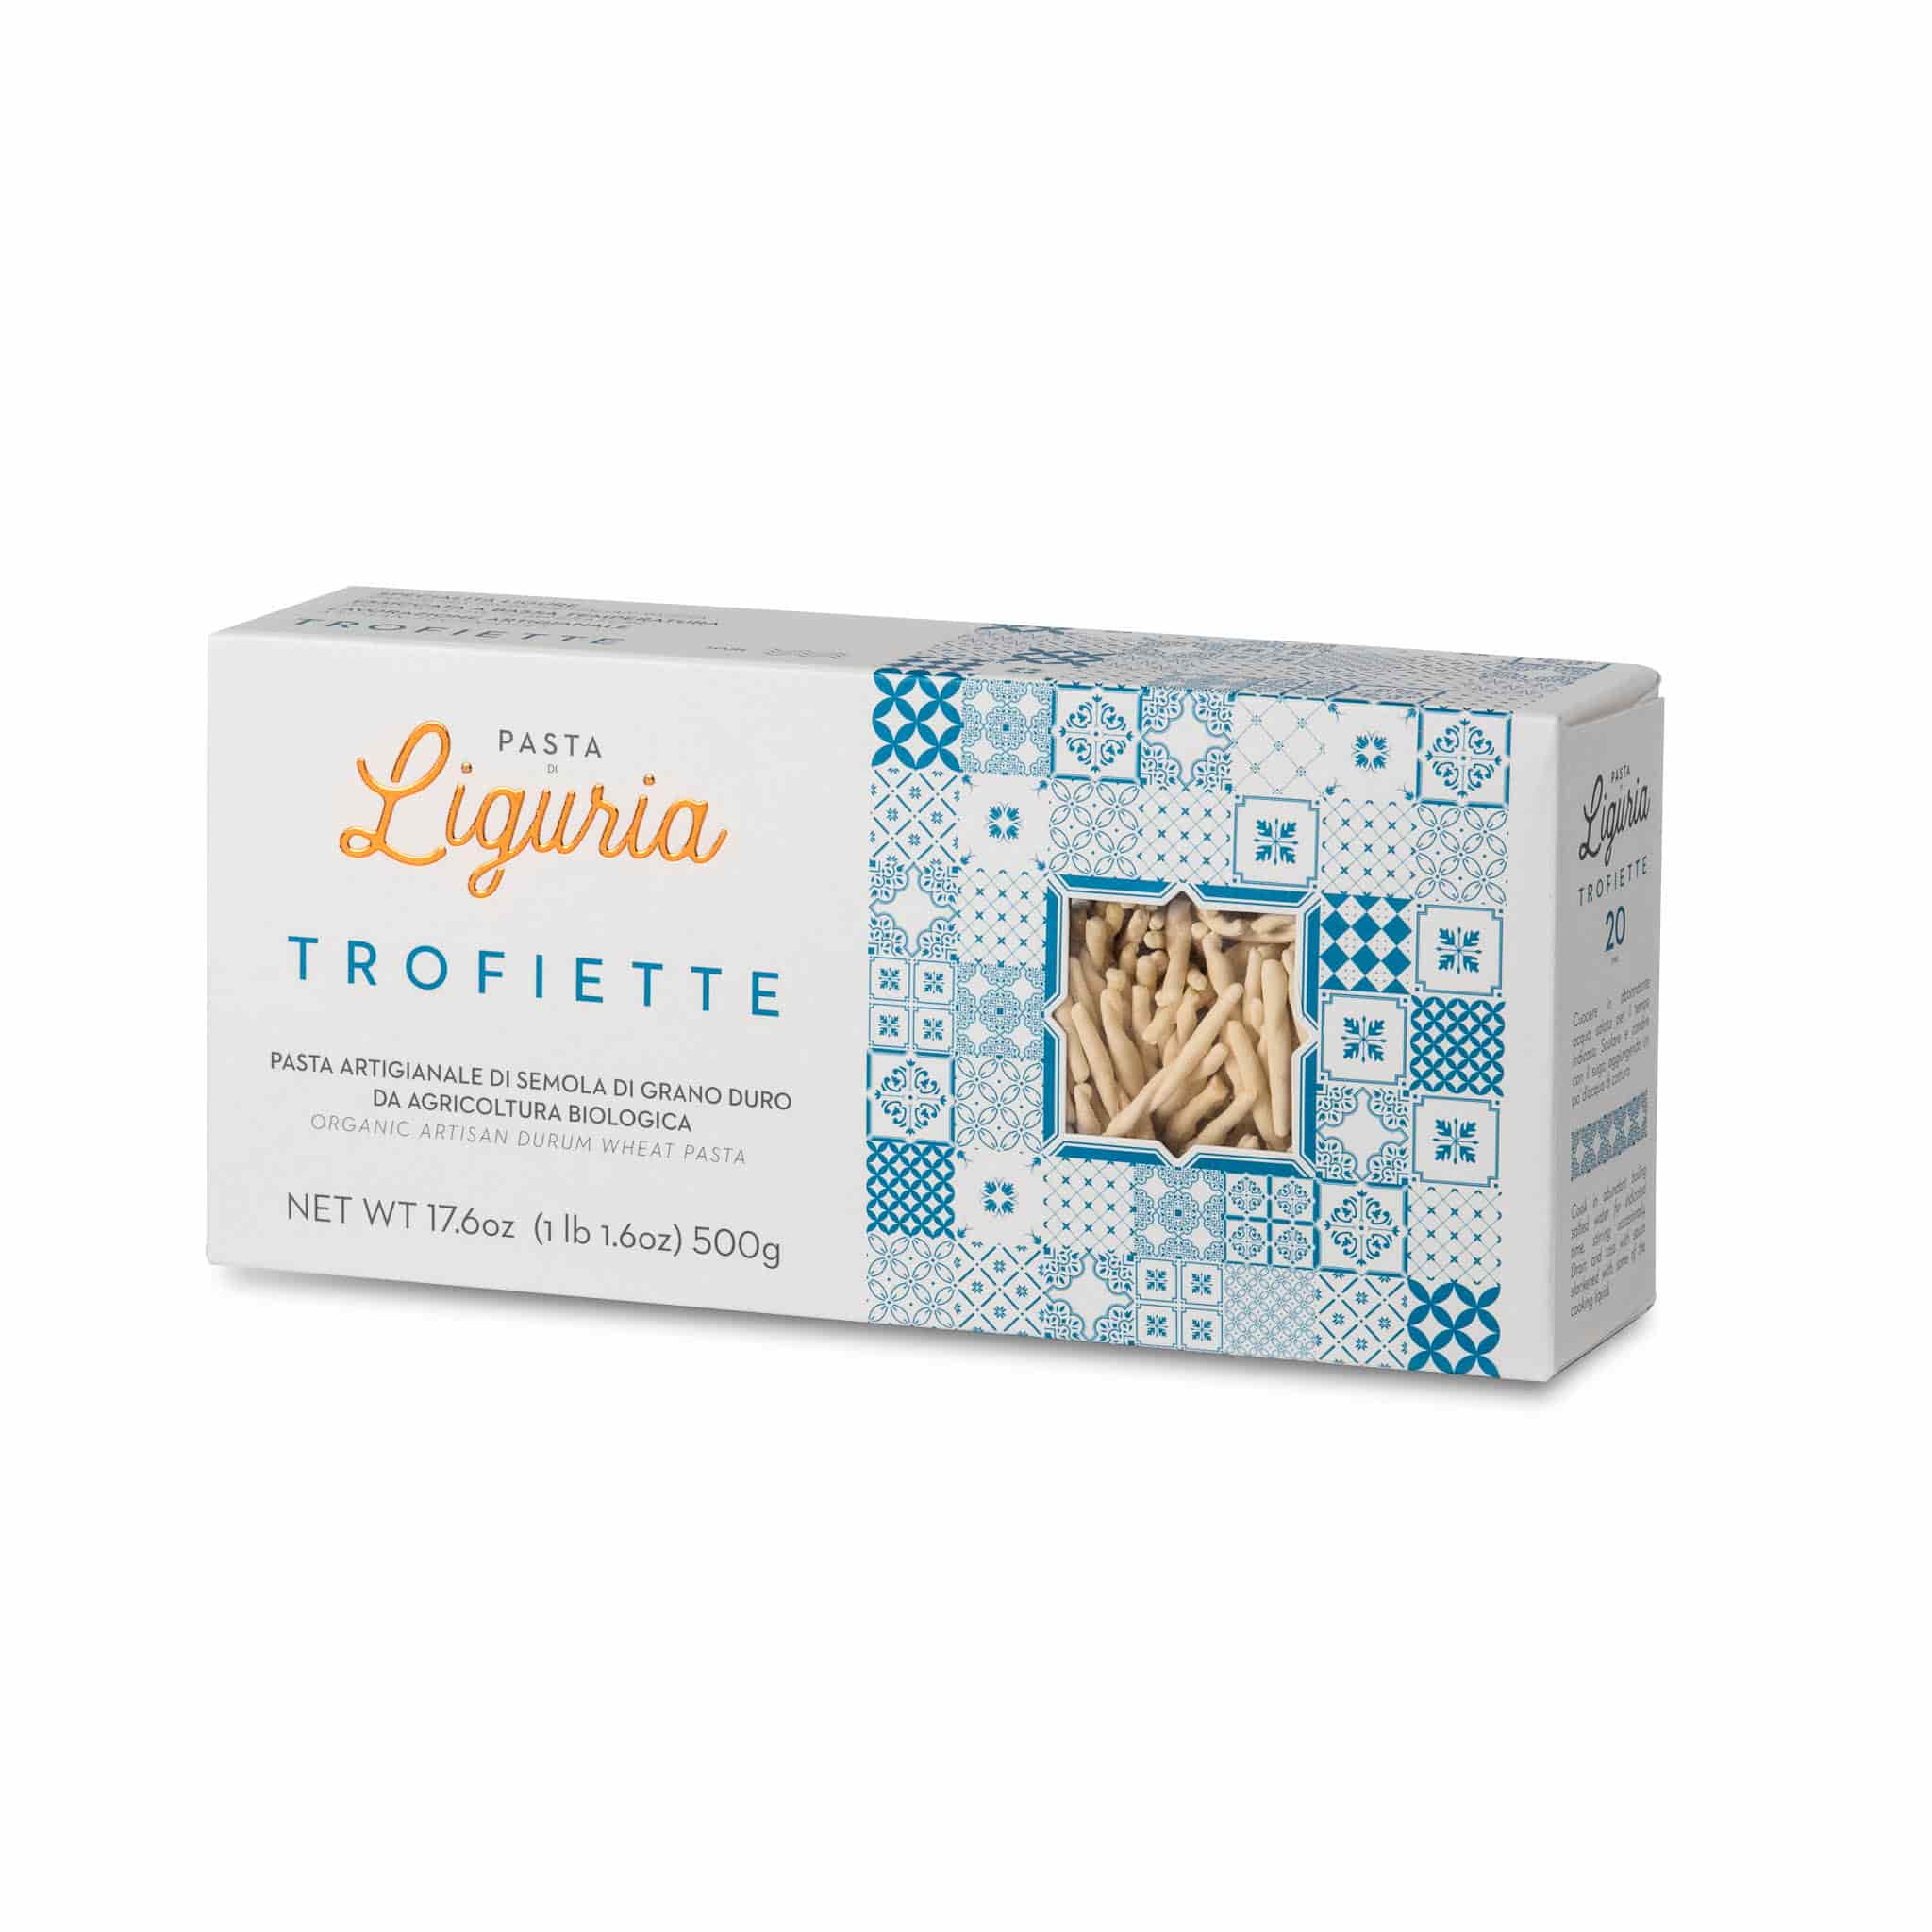 Pasta Liguria Trofiette, 500g